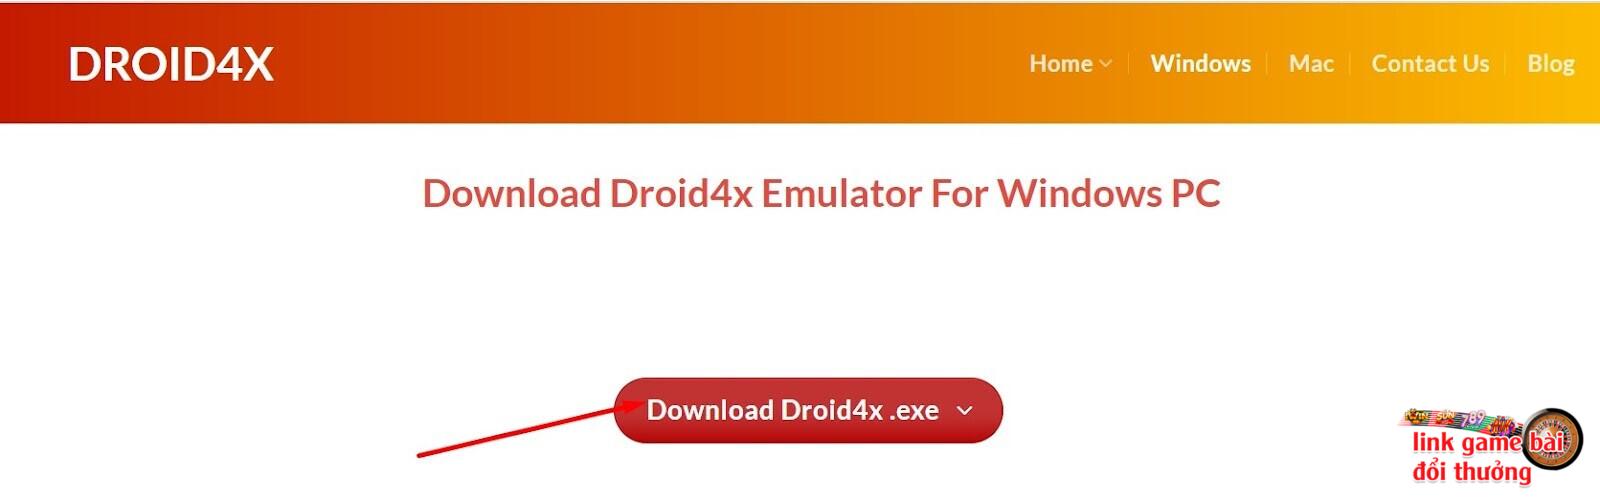 Nhấn “Download Droid4x.exe” để cài đặt trình giả lập vào thiết bị của bạn